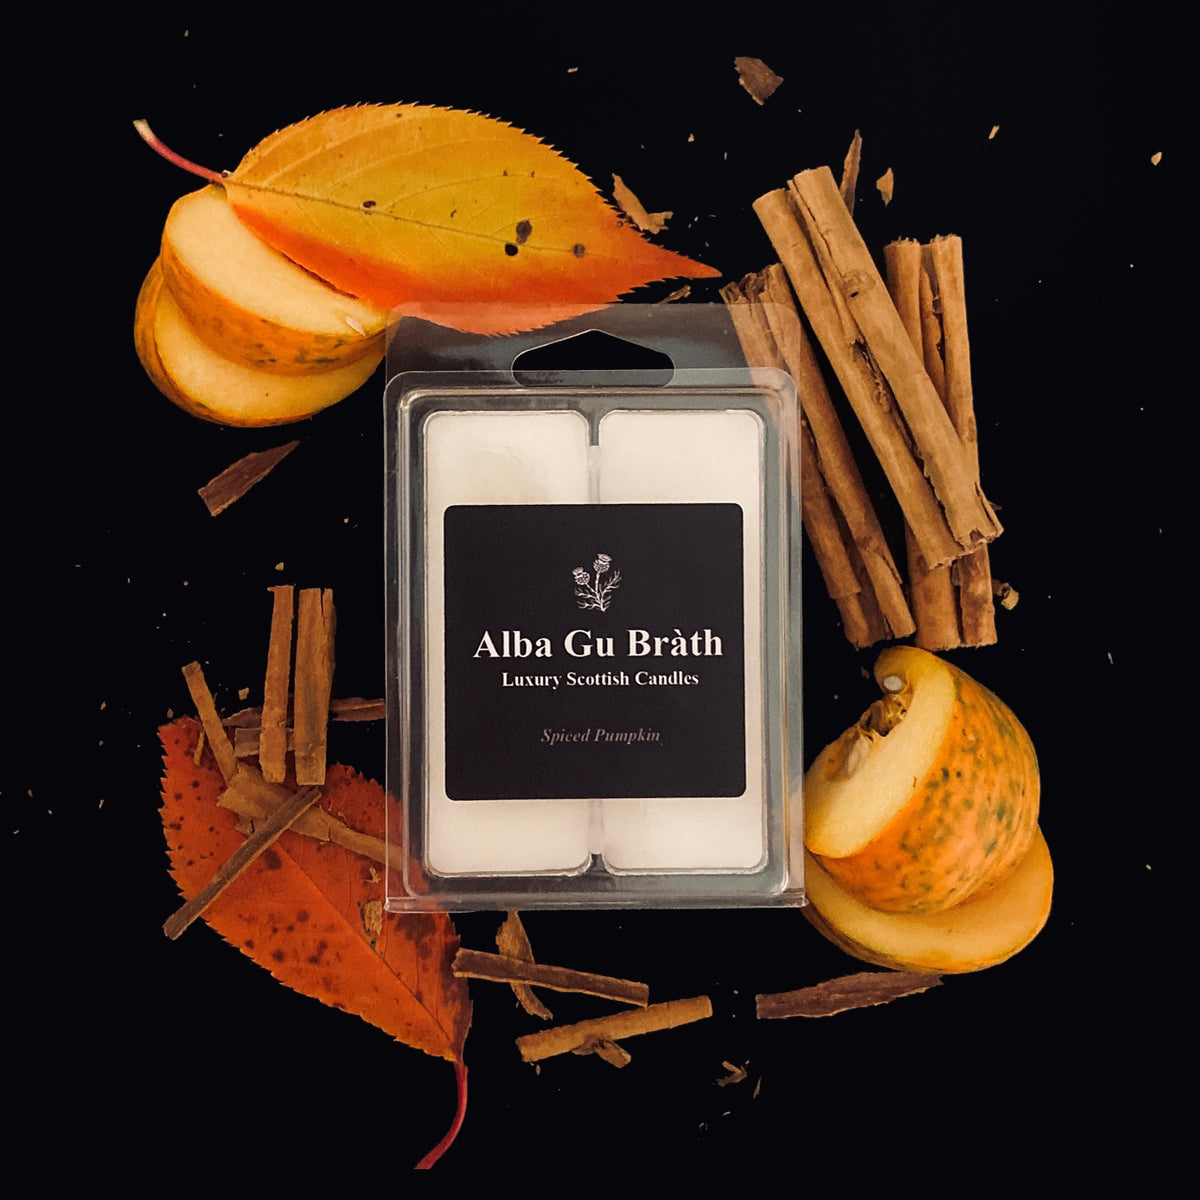 Spiced Caramel Pear Wax Melts – illuminatedbymia